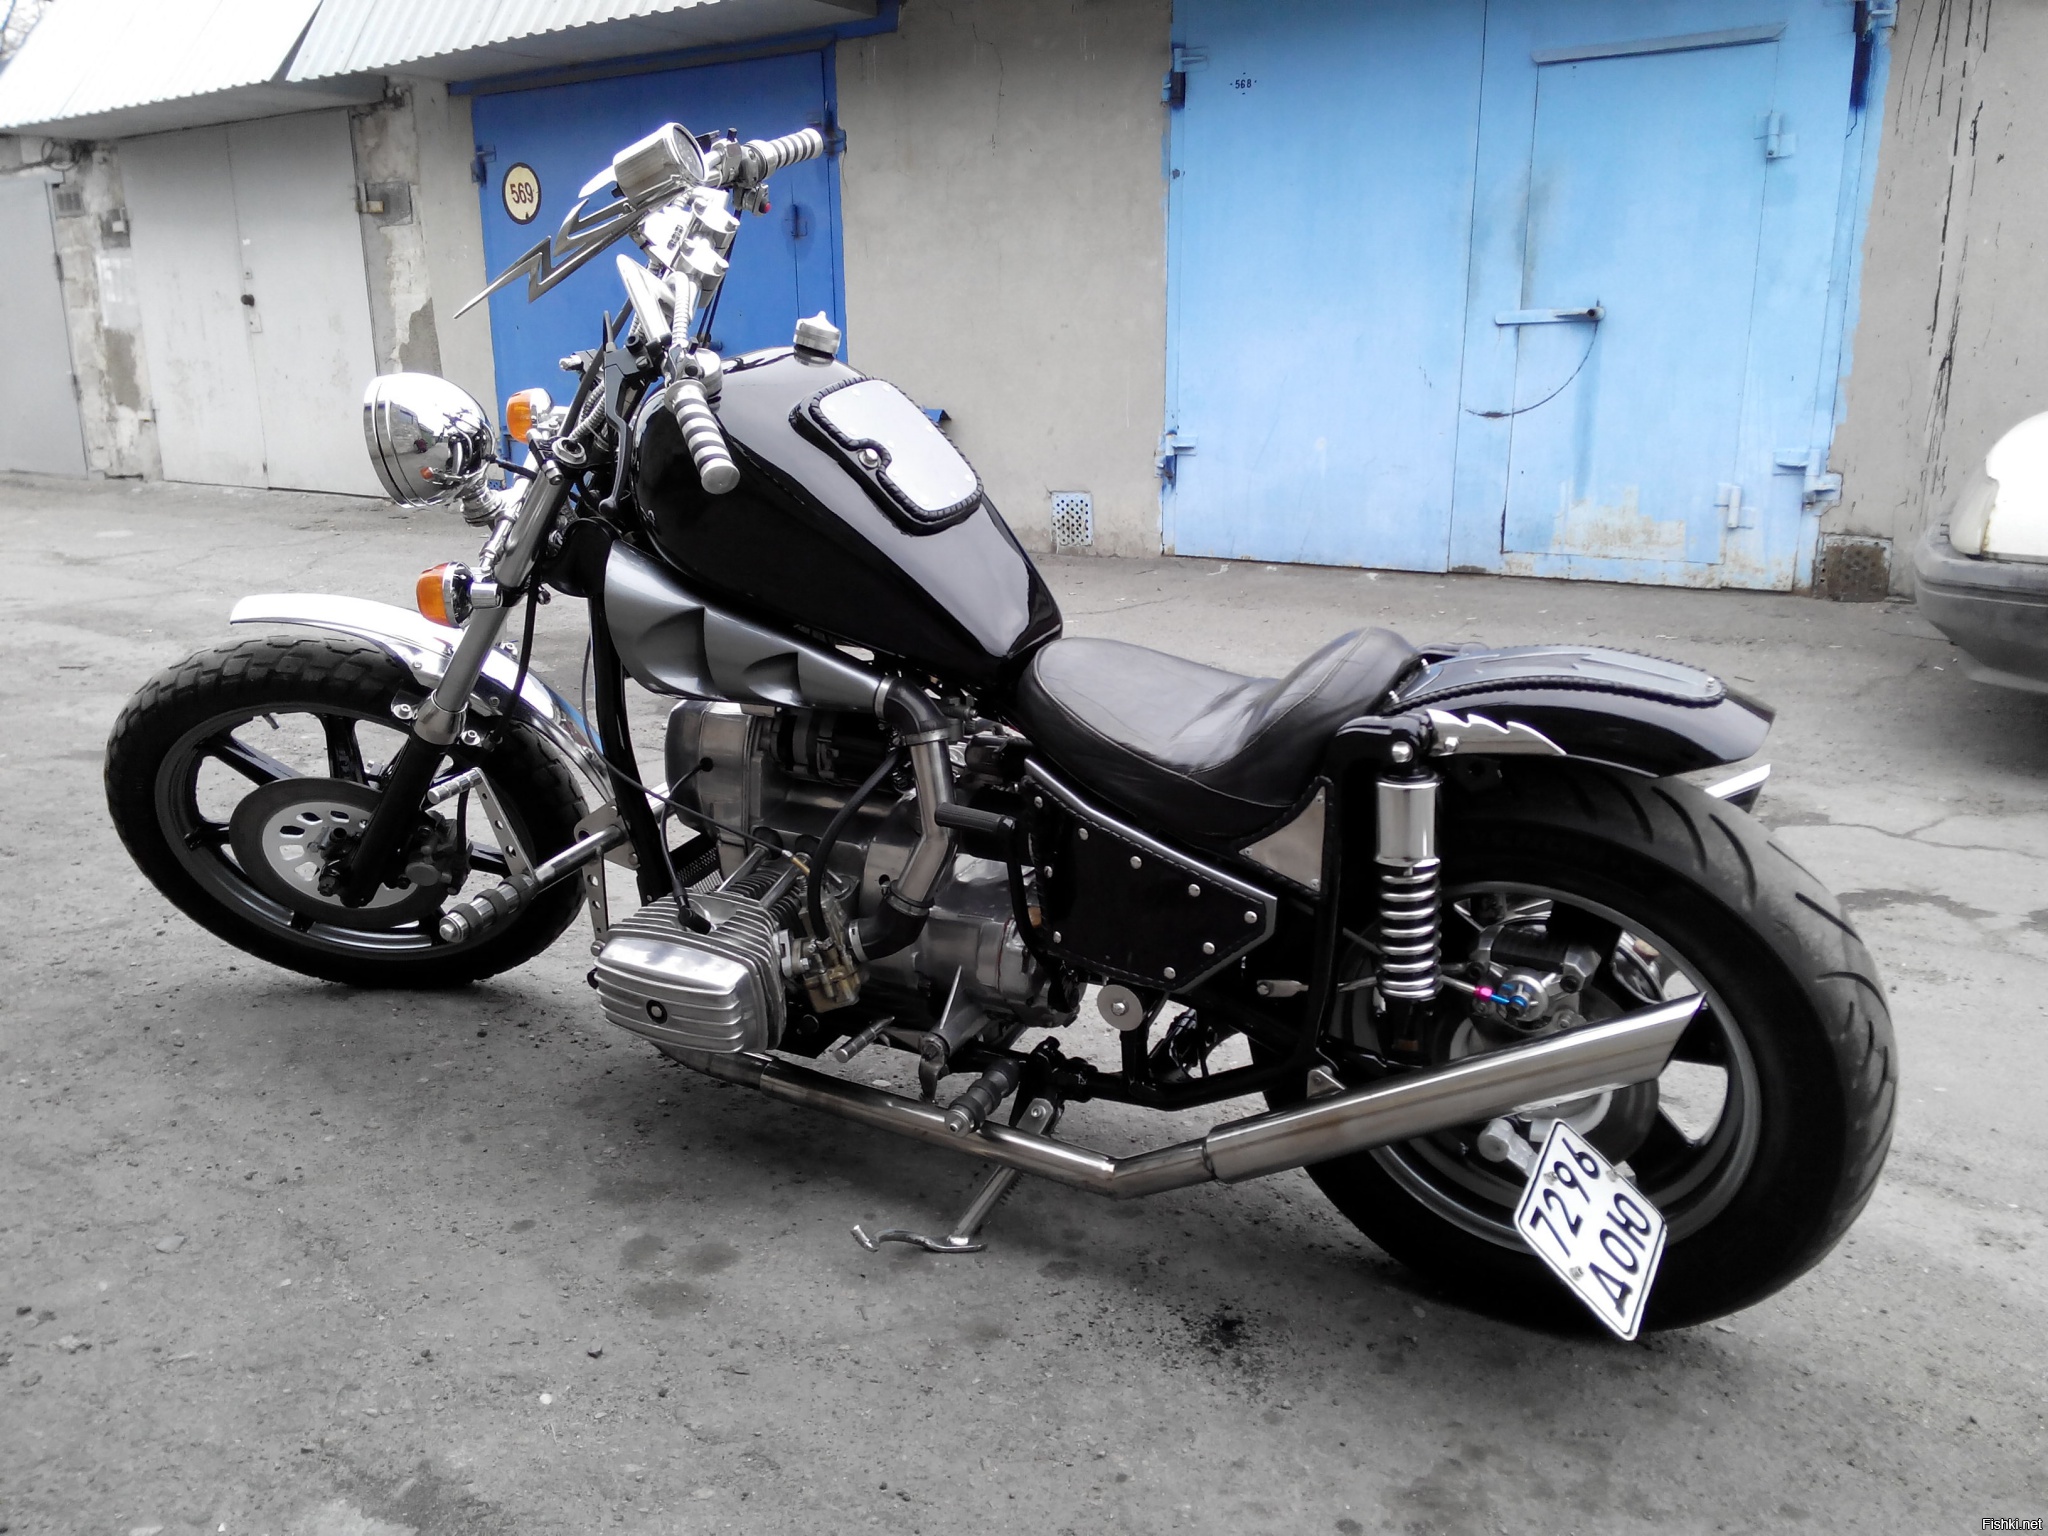 30 примеров шикарного тюнинга мотоцикла «Урал»